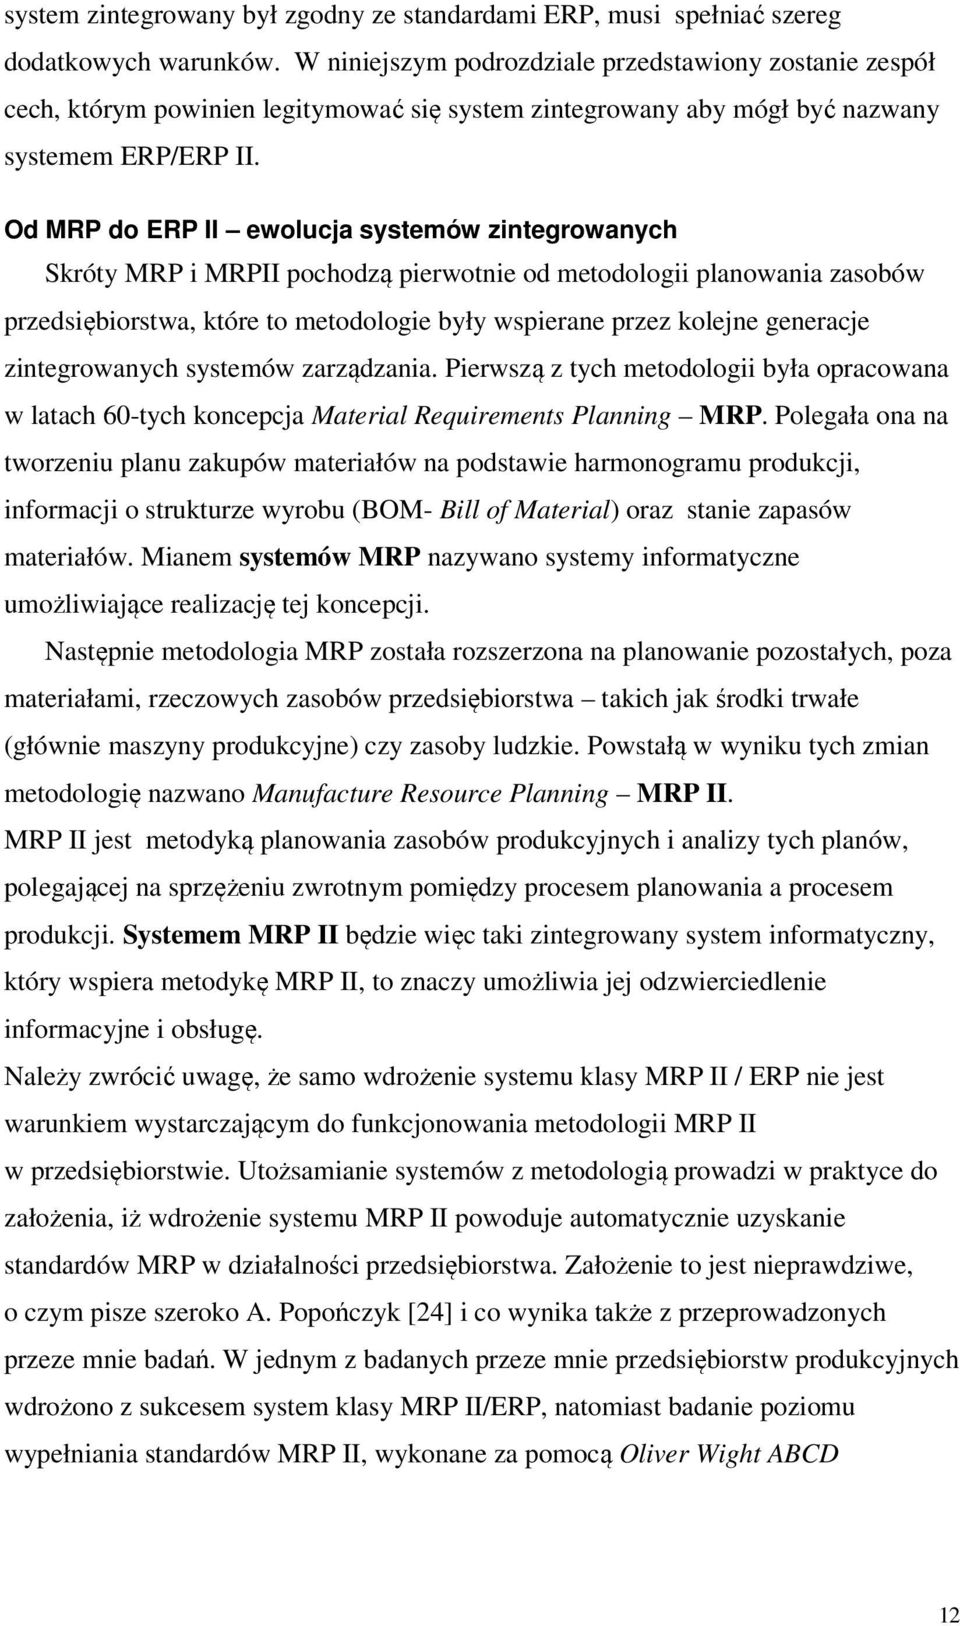 Od MRP do ERP II ewolucja systemów zintegrowanych Skróty MRP i MRPII pochodzą pierwotnie od metodologii planowania zasobów przedsiębiorstwa, które to metodologie były wspierane przez kolejne